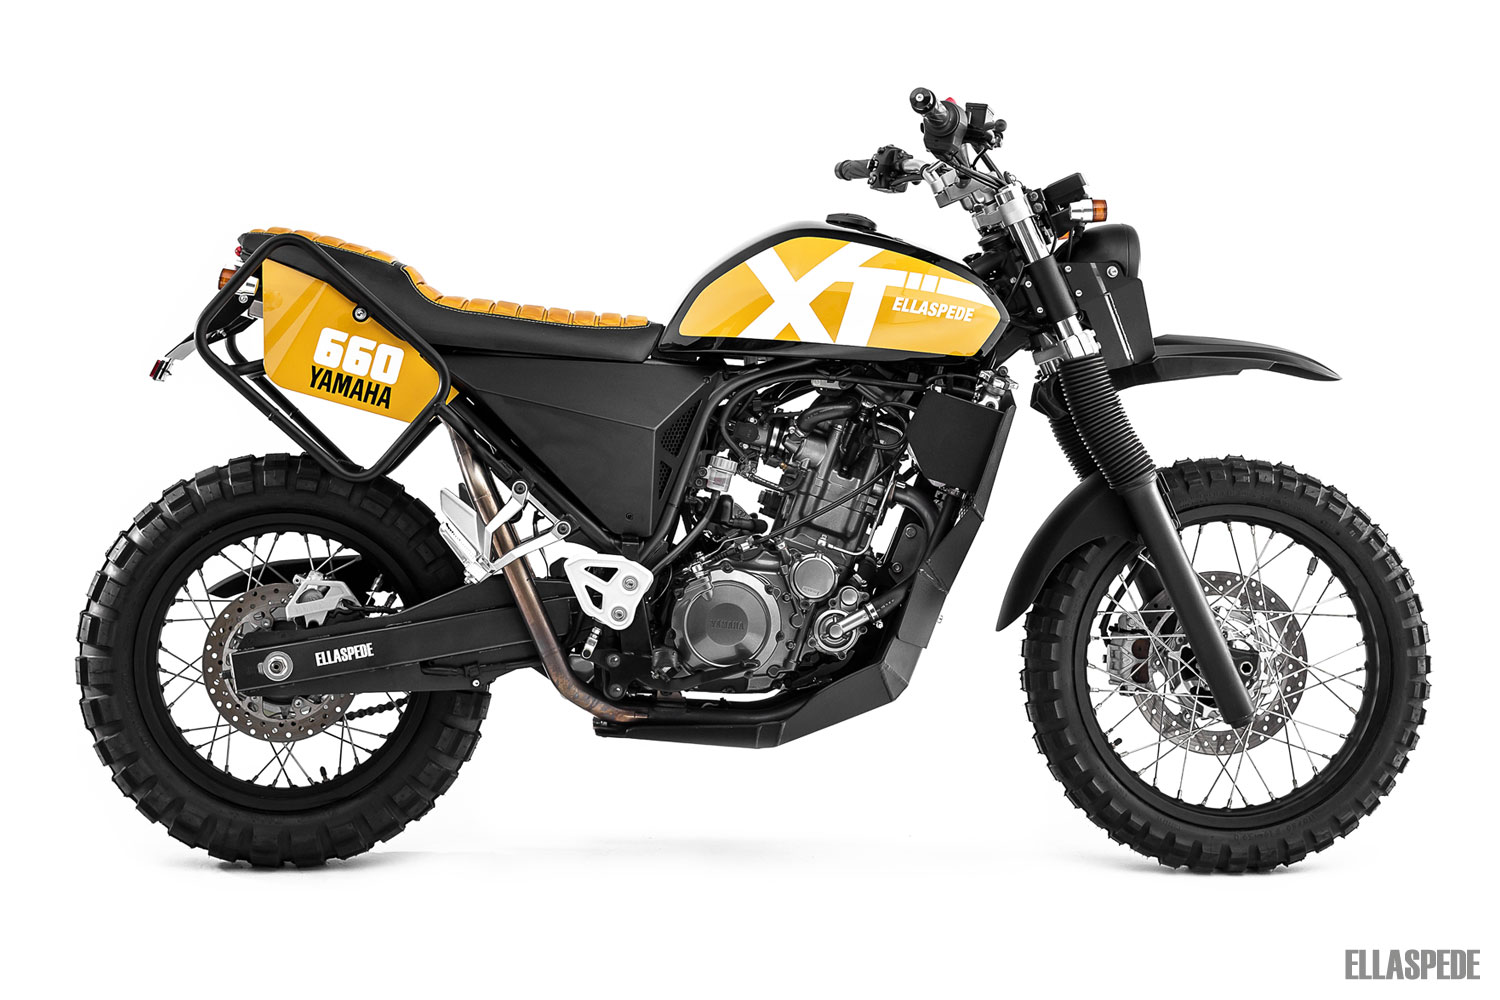 EB141 – 2014 Yamaha XT660R image